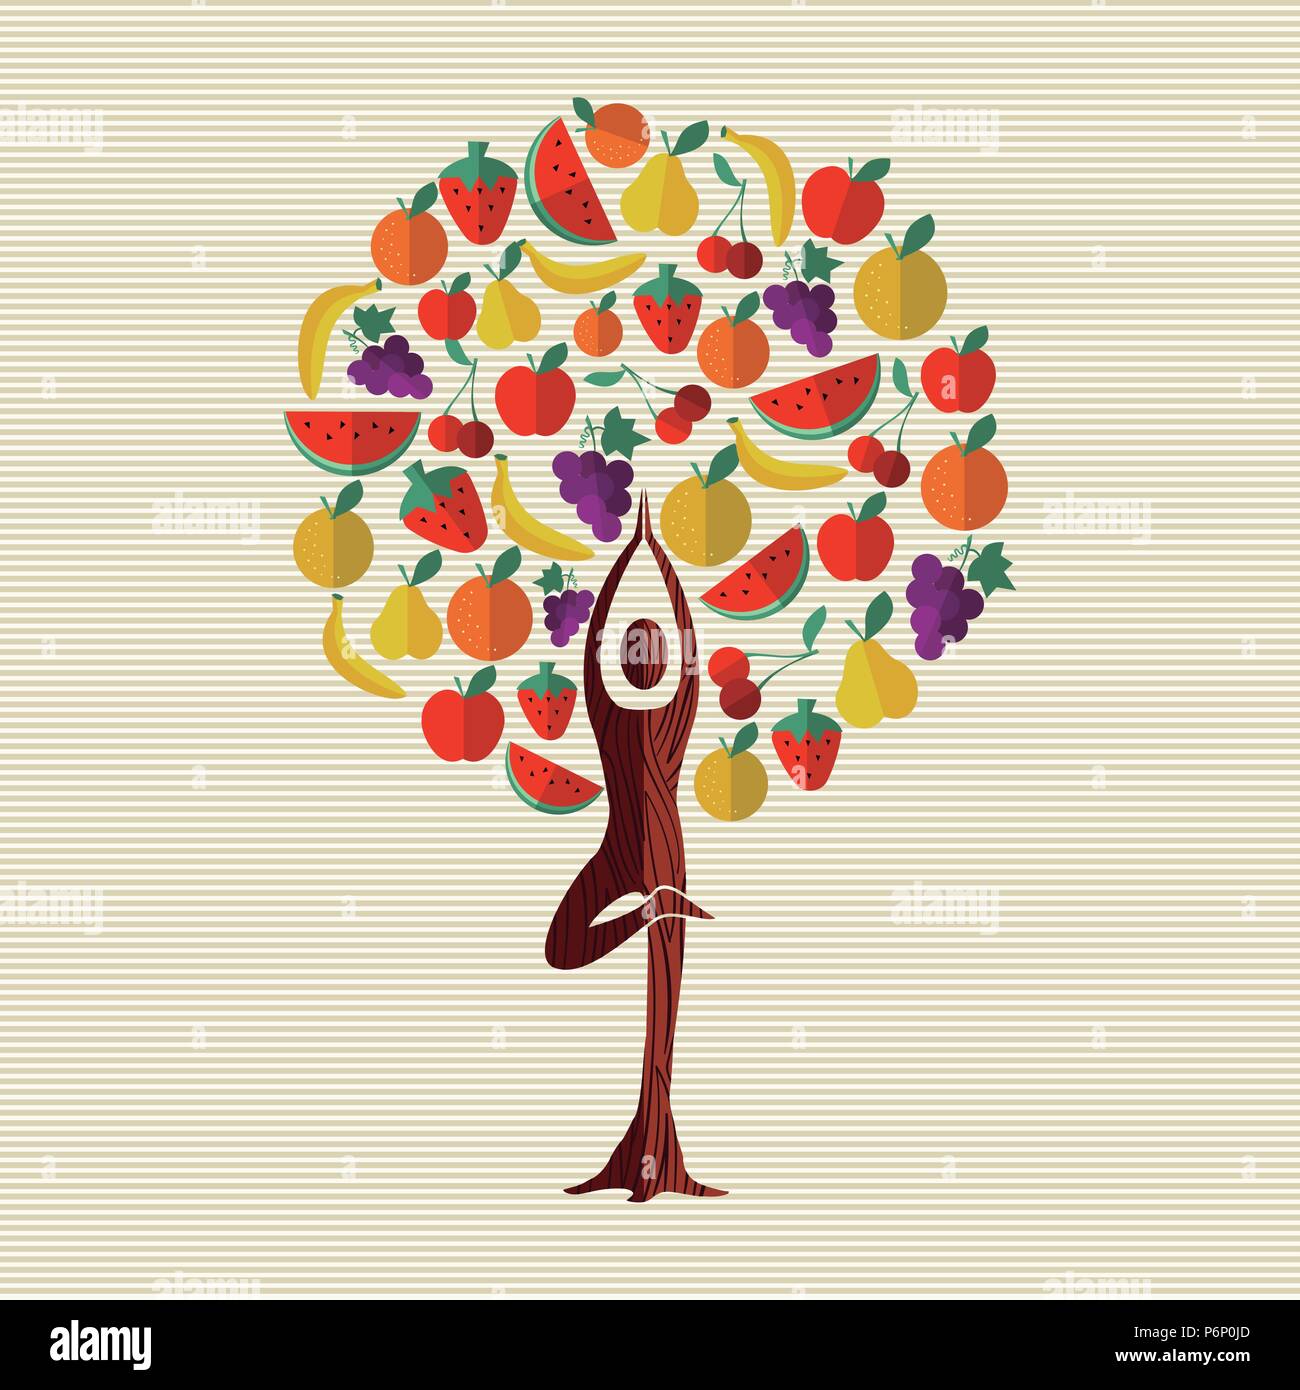 Baum aus Obst mit Frau Yoga dar. Gesunde Ernährung und Diät Konzept. Mit Wassermelone, Apple, Orange, Banane. EPS 10 Vektor. Stock Vektor